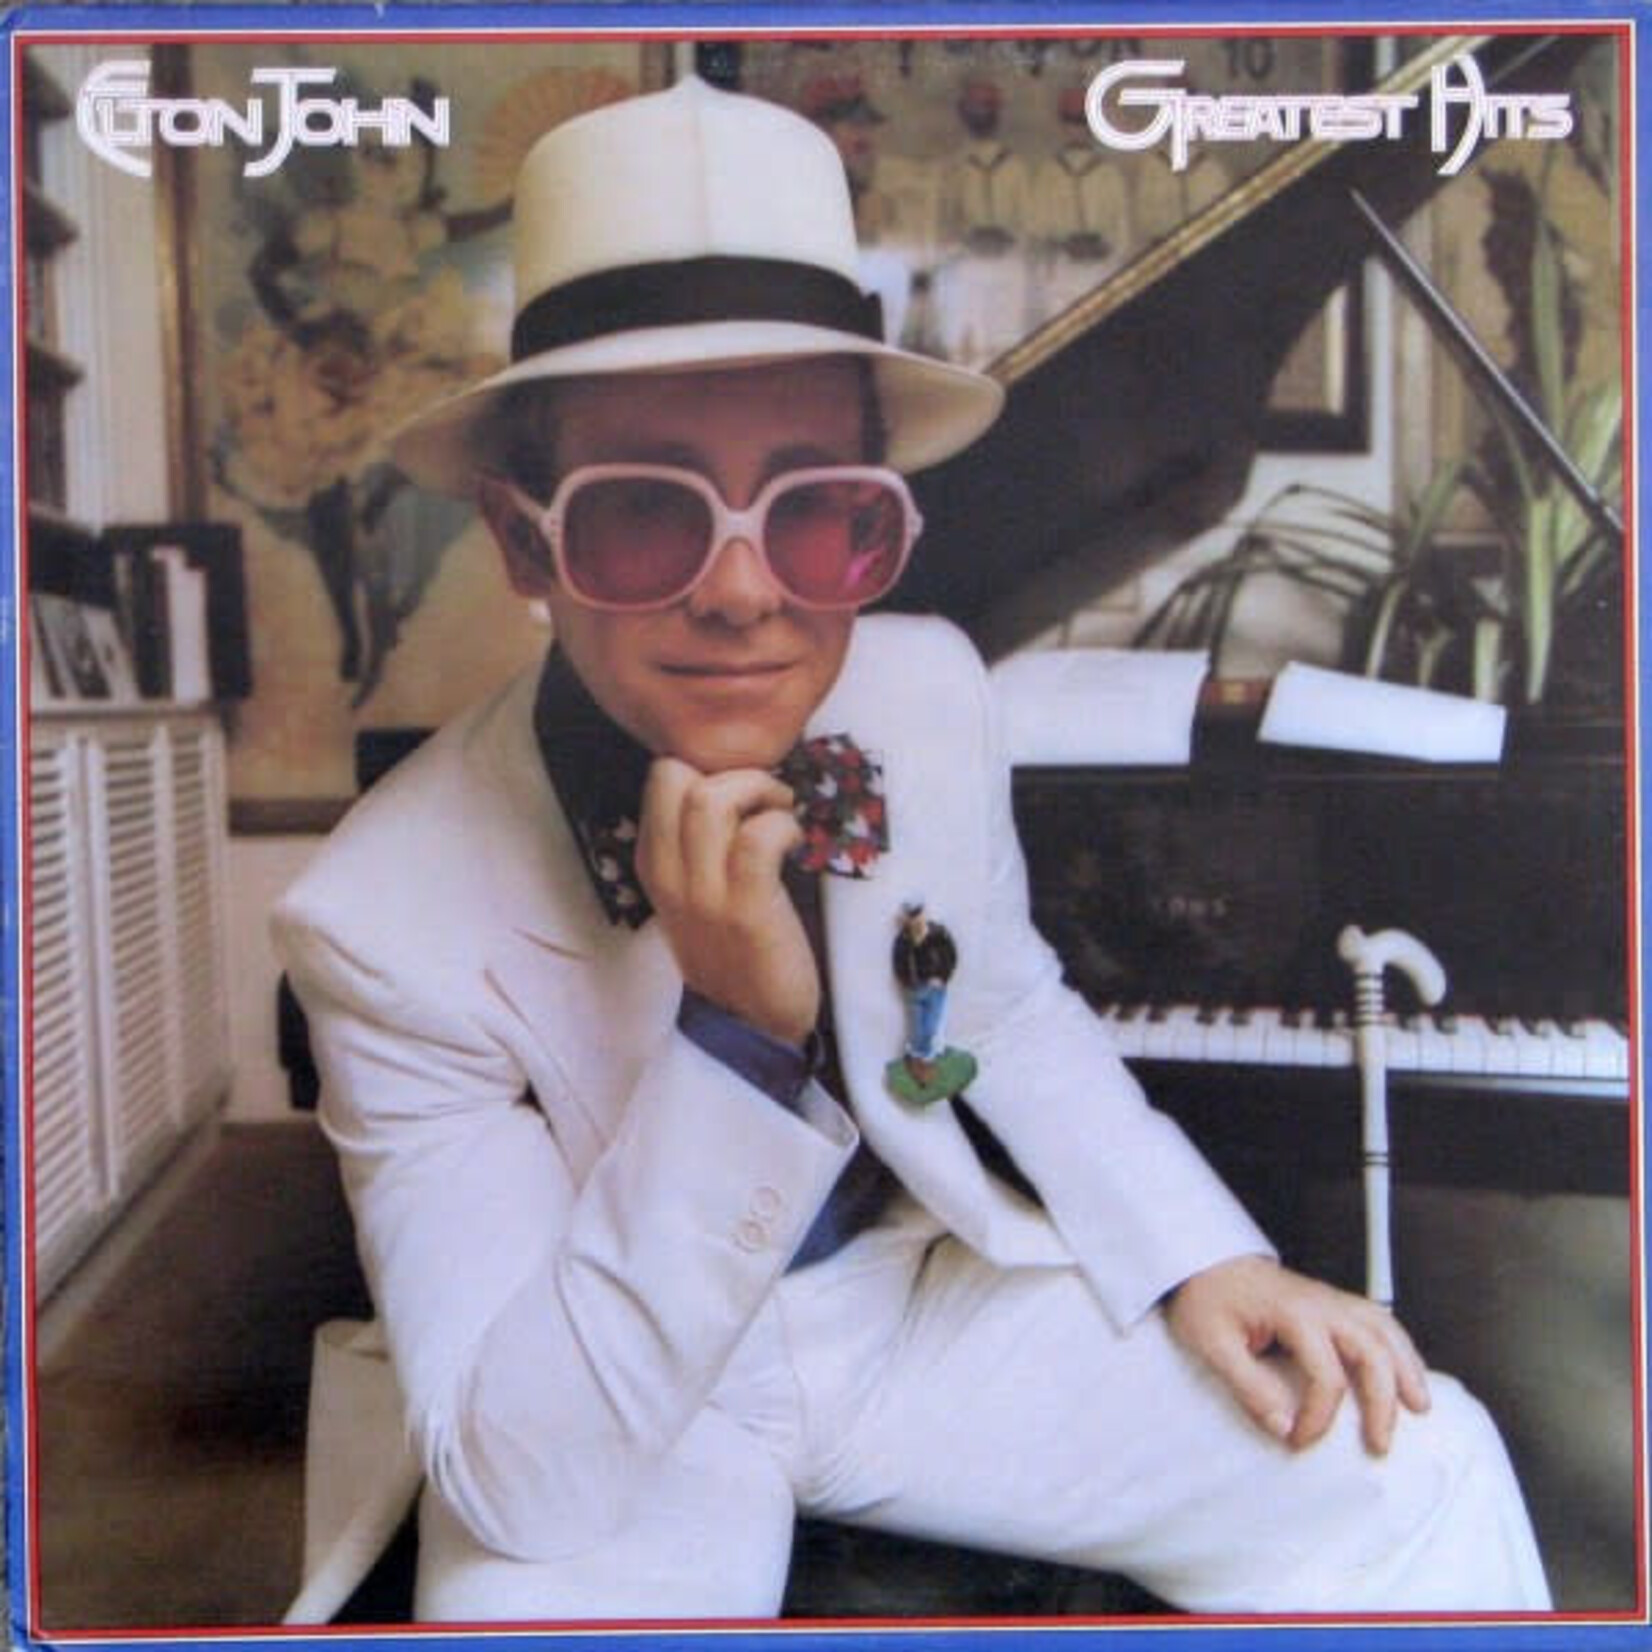 Elton John Elton John – Greatest Hits (VG, 1974, LP, MCA Records – MCA 3007)